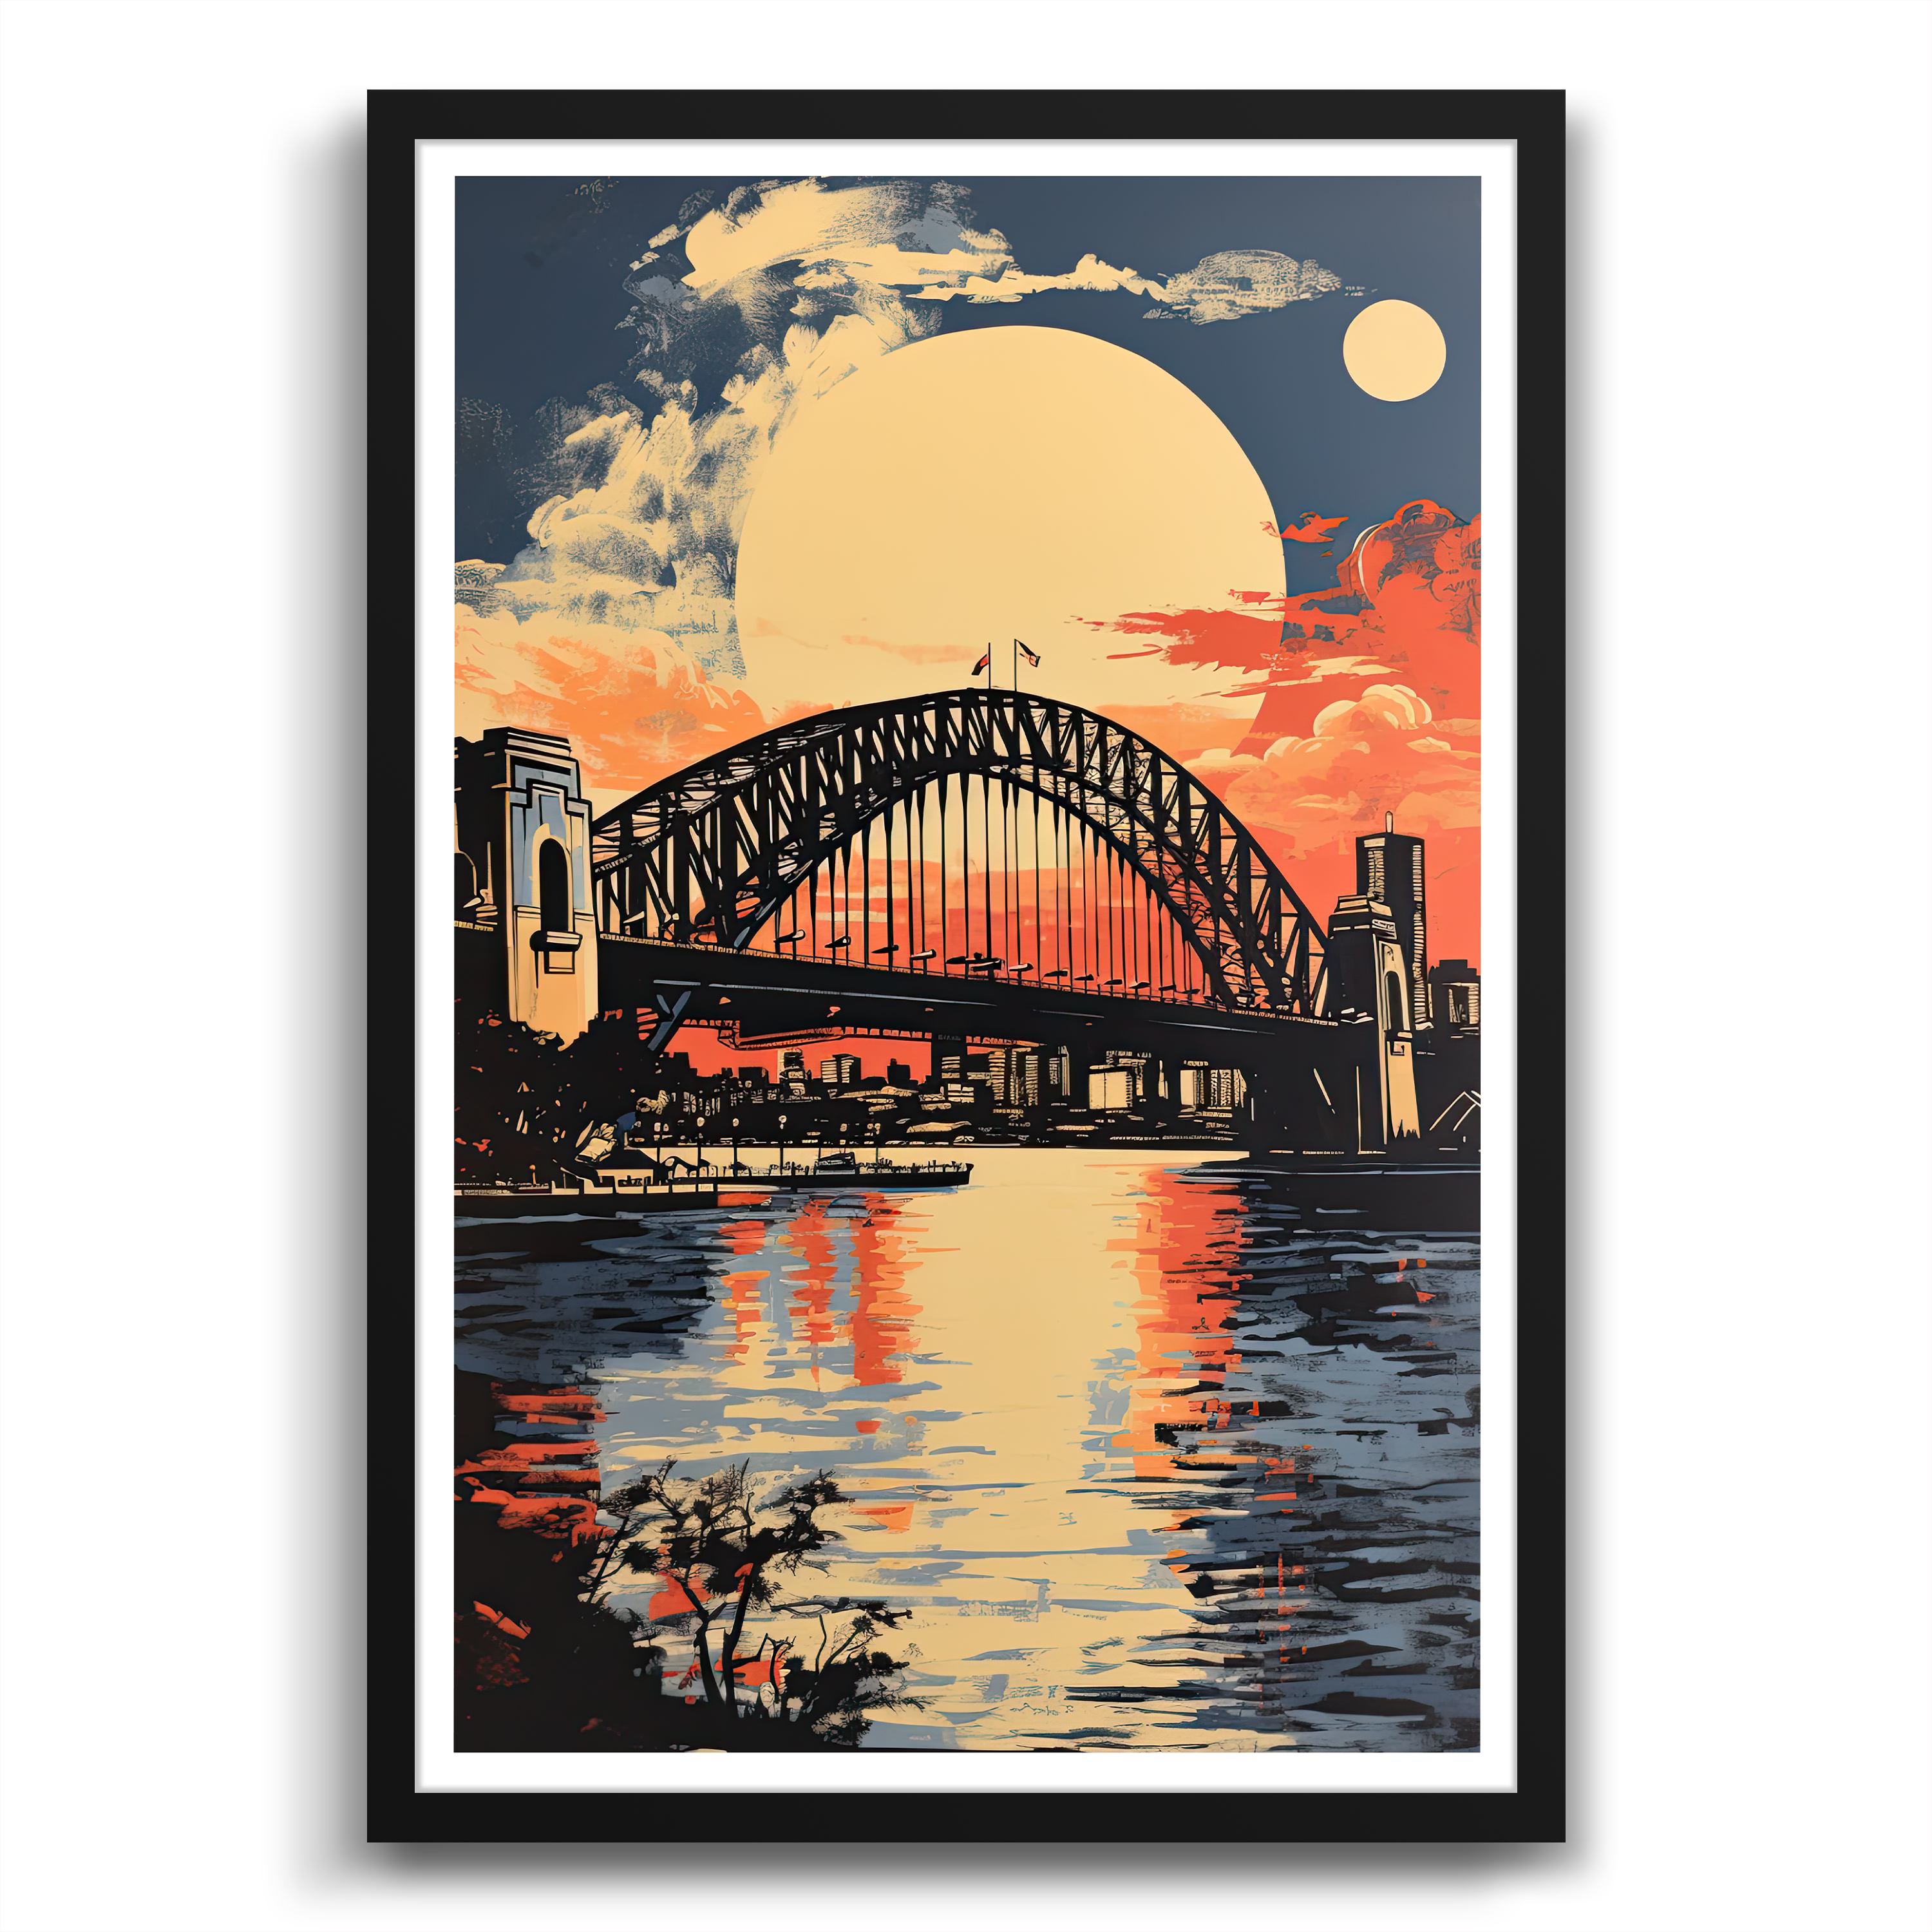 Sydney Harbour Bridge In The Moonlight poster